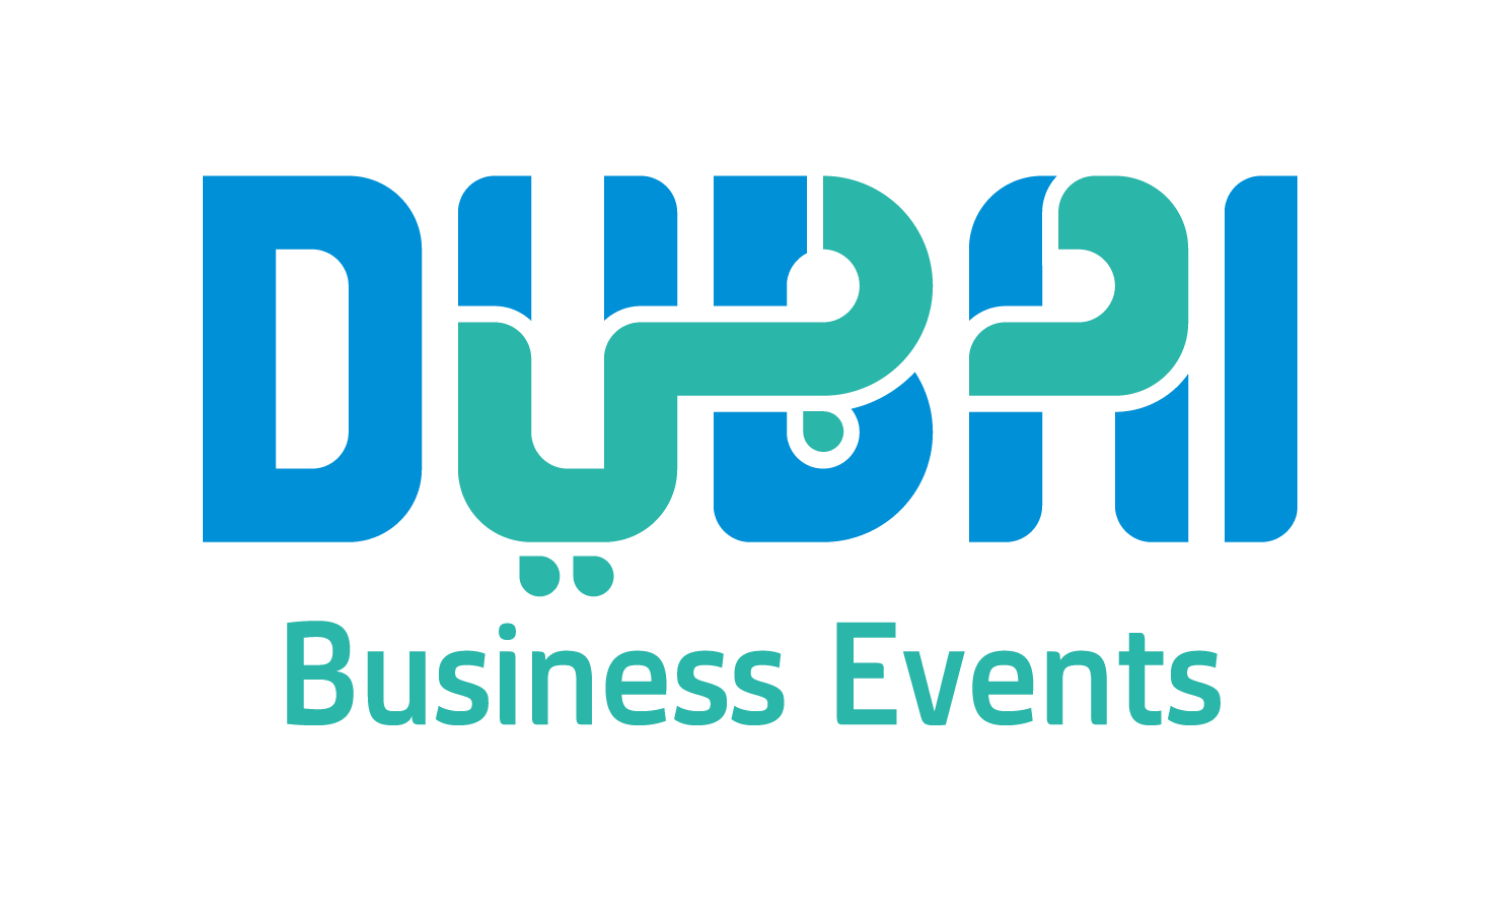 Dubai Business Event